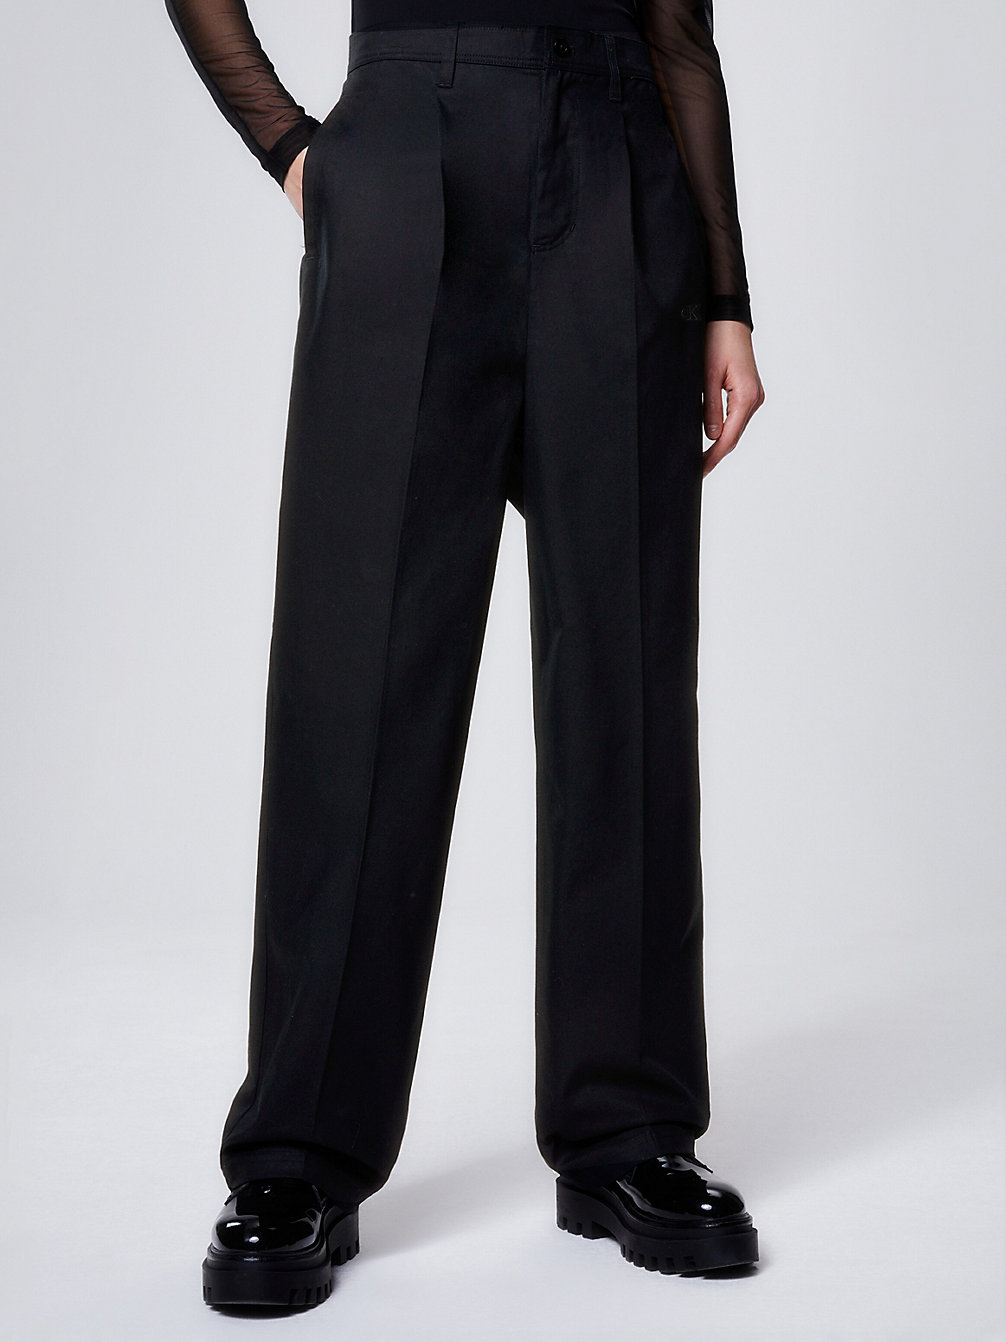 CK BLACK Pantaloni Aderenti In Twill Di Cotone Unisex undefined unisex Calvin Klein